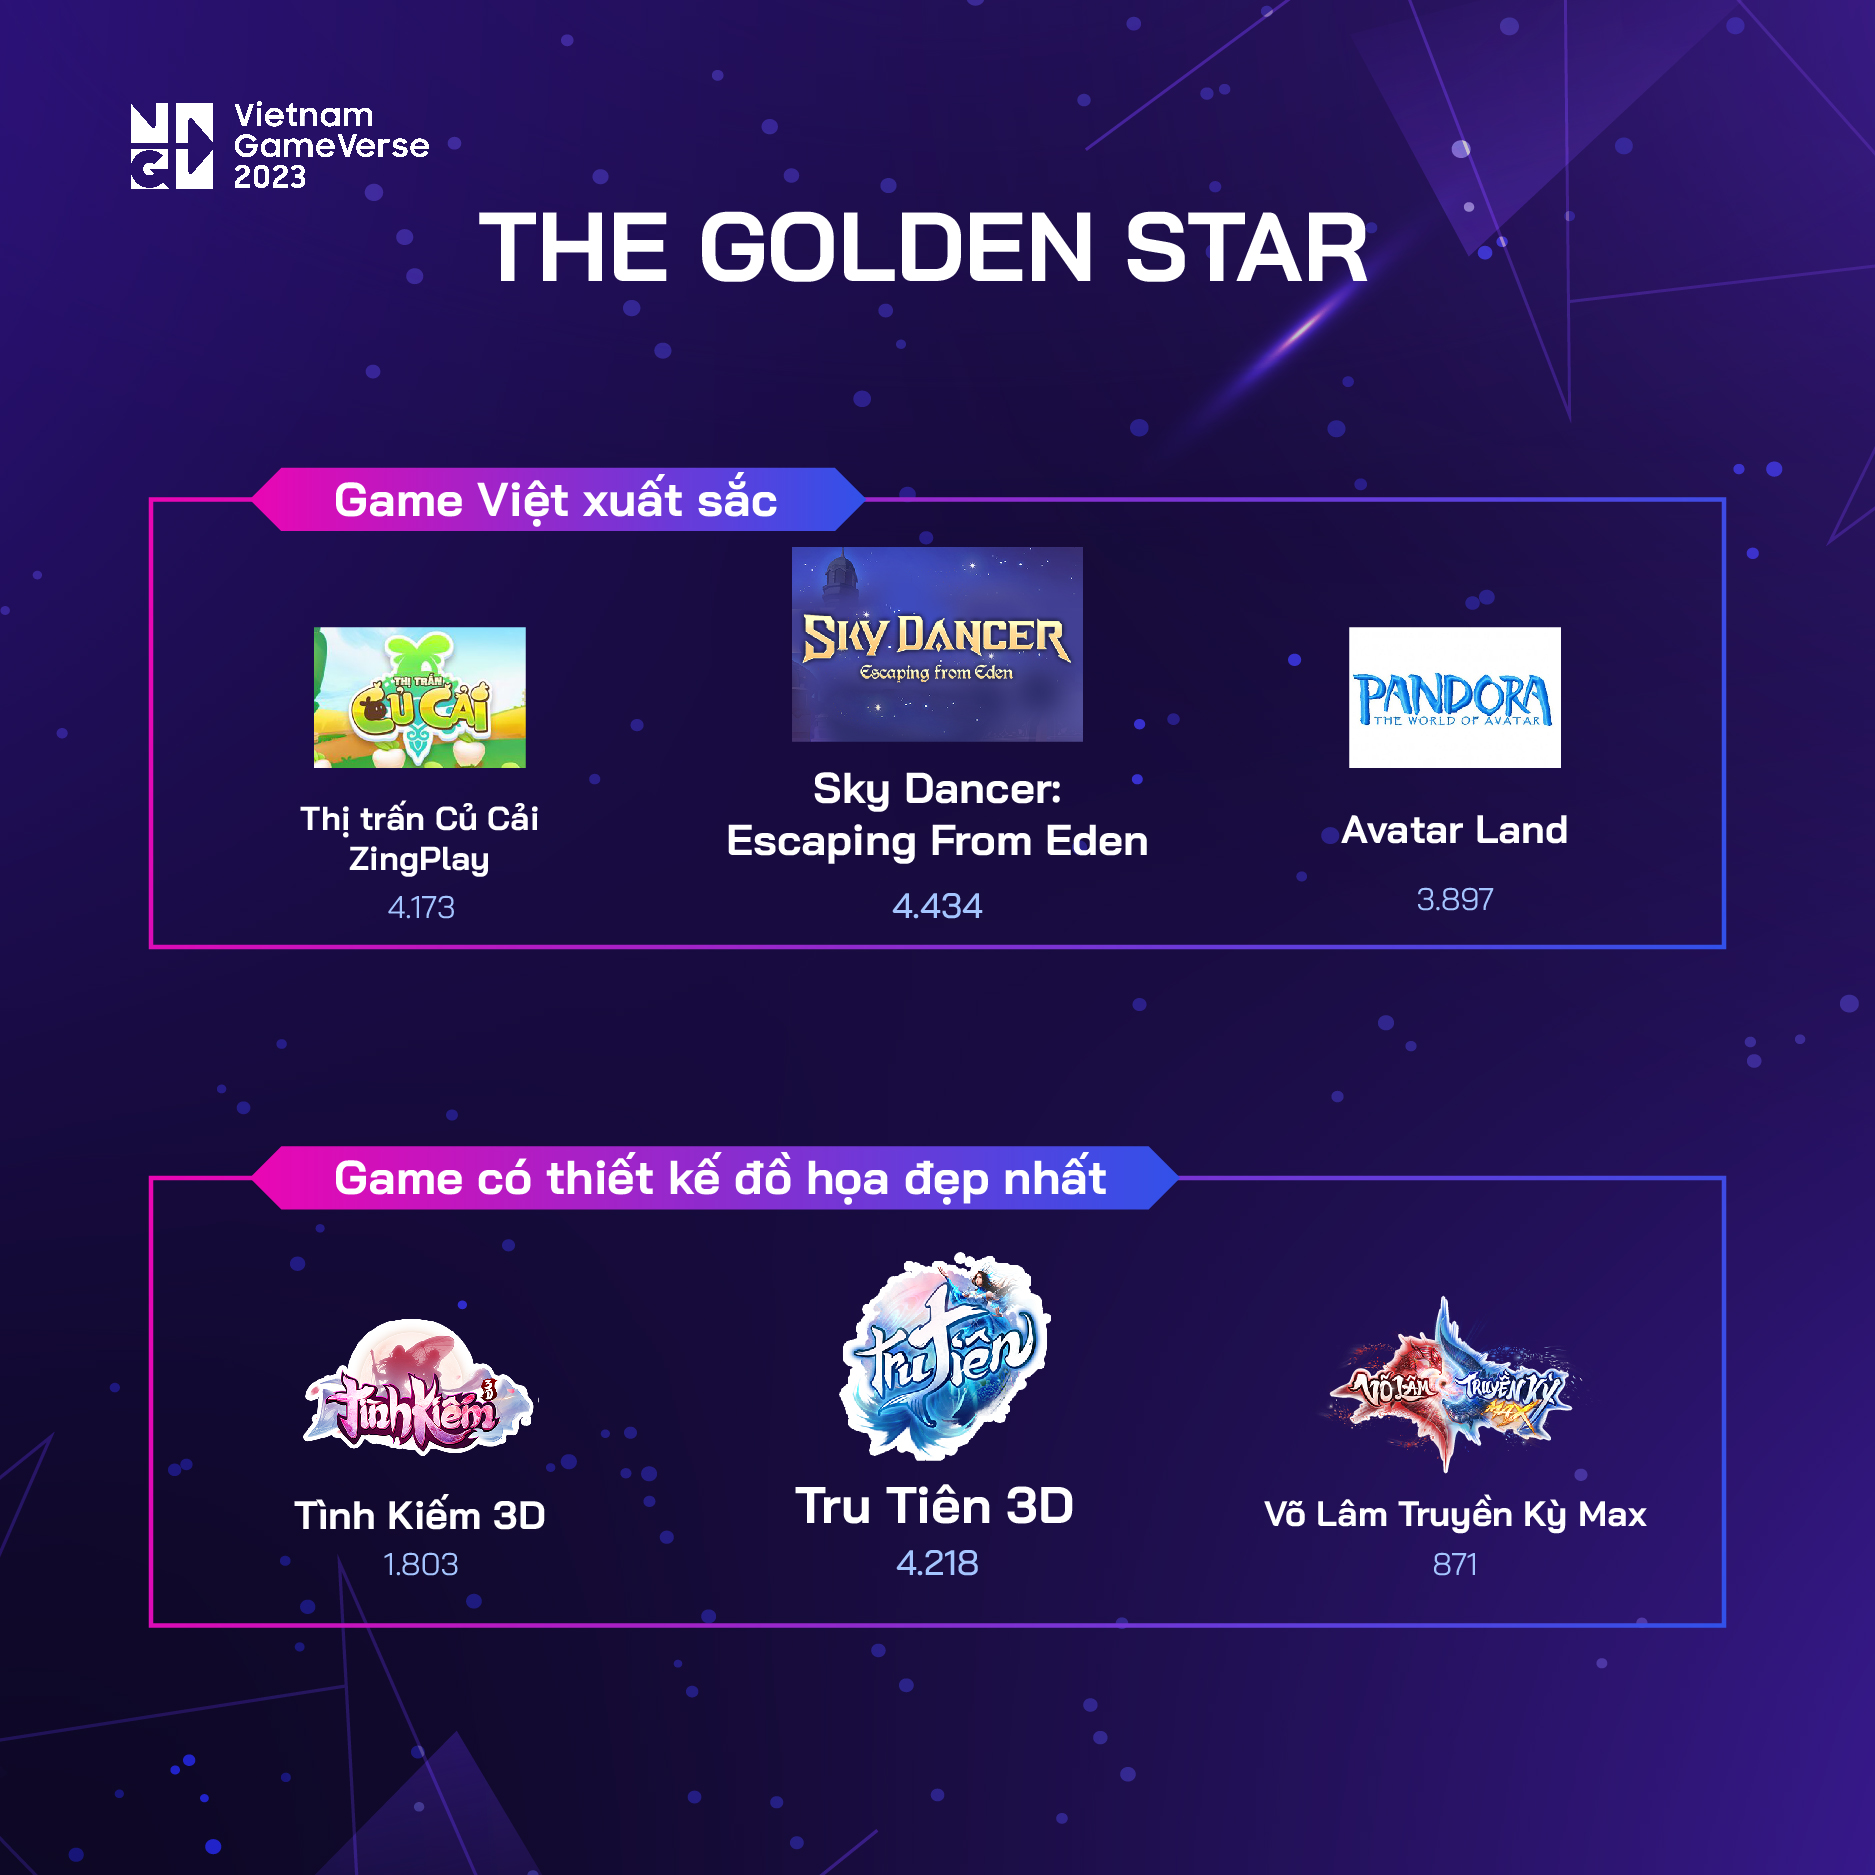 Vietnam-Game-awards-2023-the-golden-star-game-viet